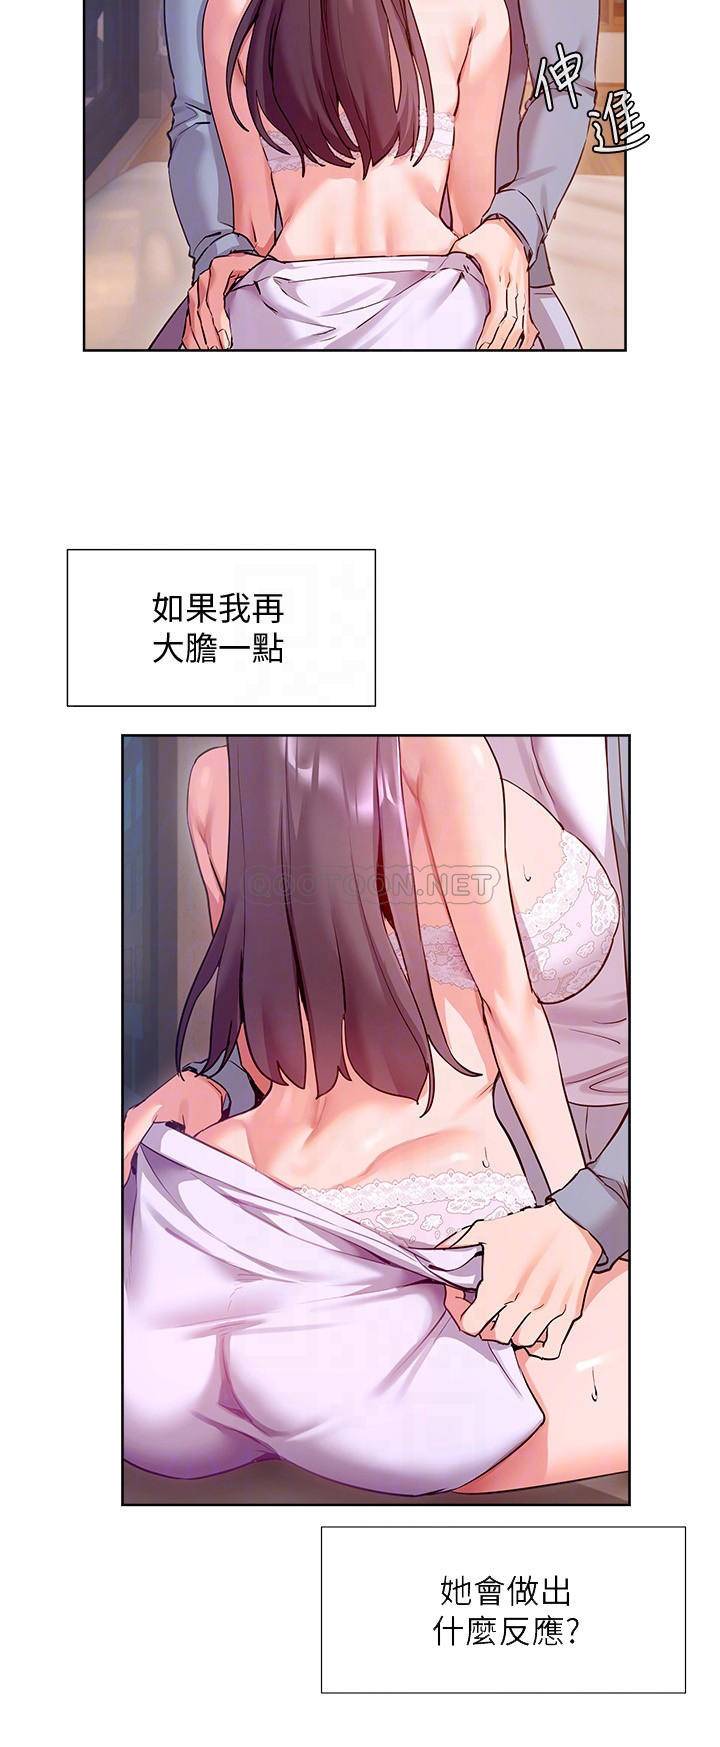 韩国污漫画 現上教學 第12话让你体验乳交的快感! 11